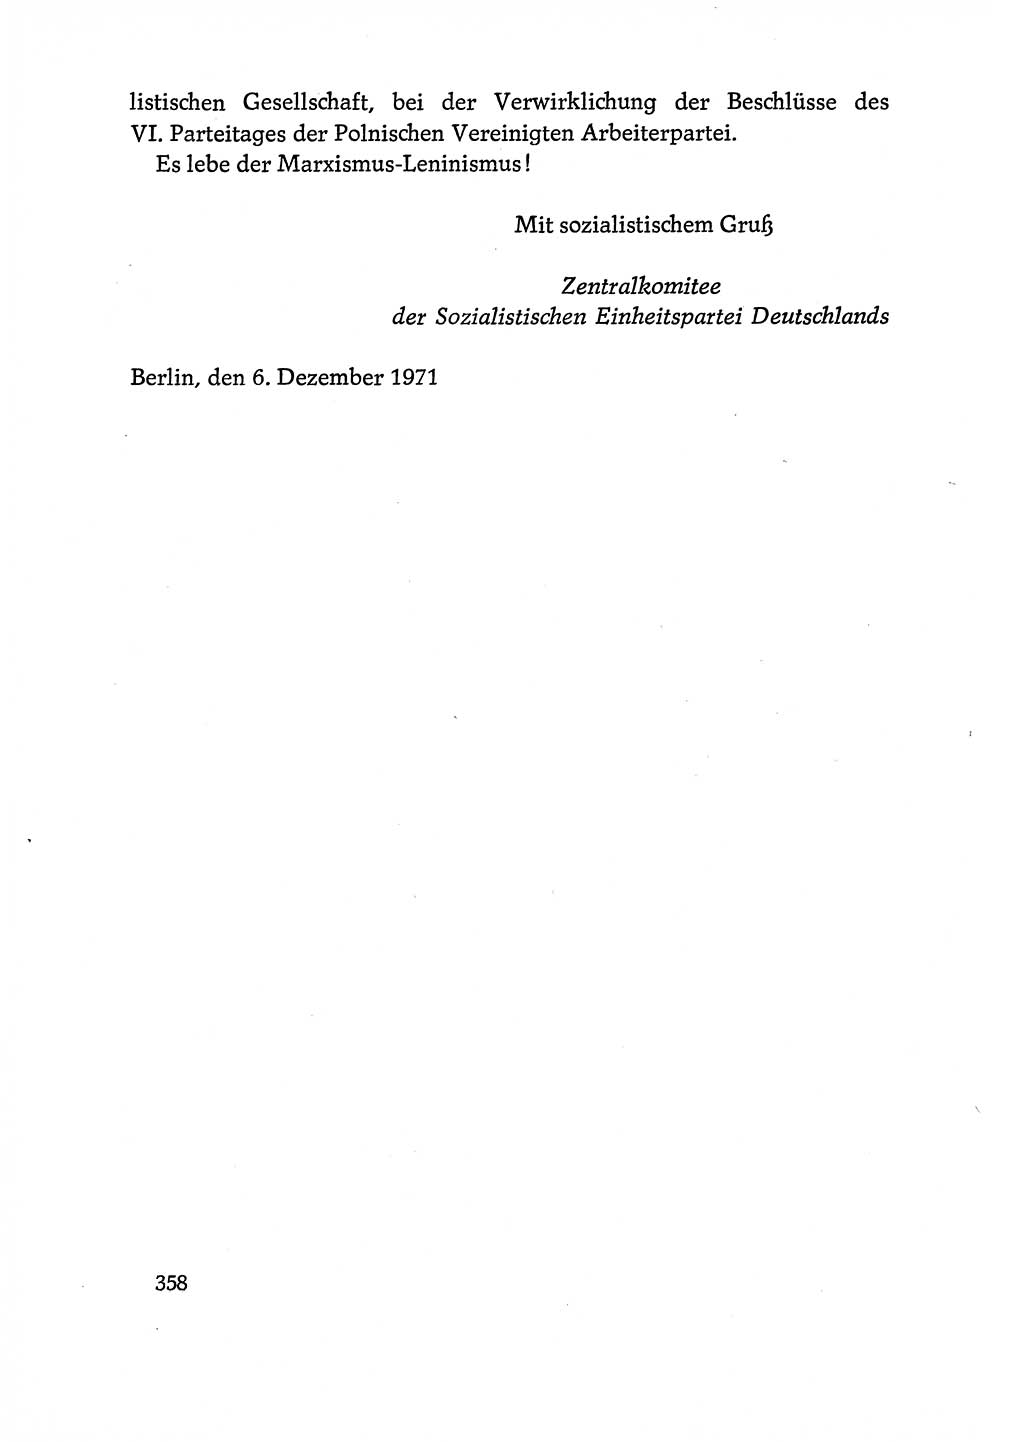 Dokumente der Sozialistischen Einheitspartei Deutschlands (SED) [Deutsche Demokratische Republik (DDR)] 1970-1971, Seite 358 (Dok. SED DDR 1970-1971, S. 358)